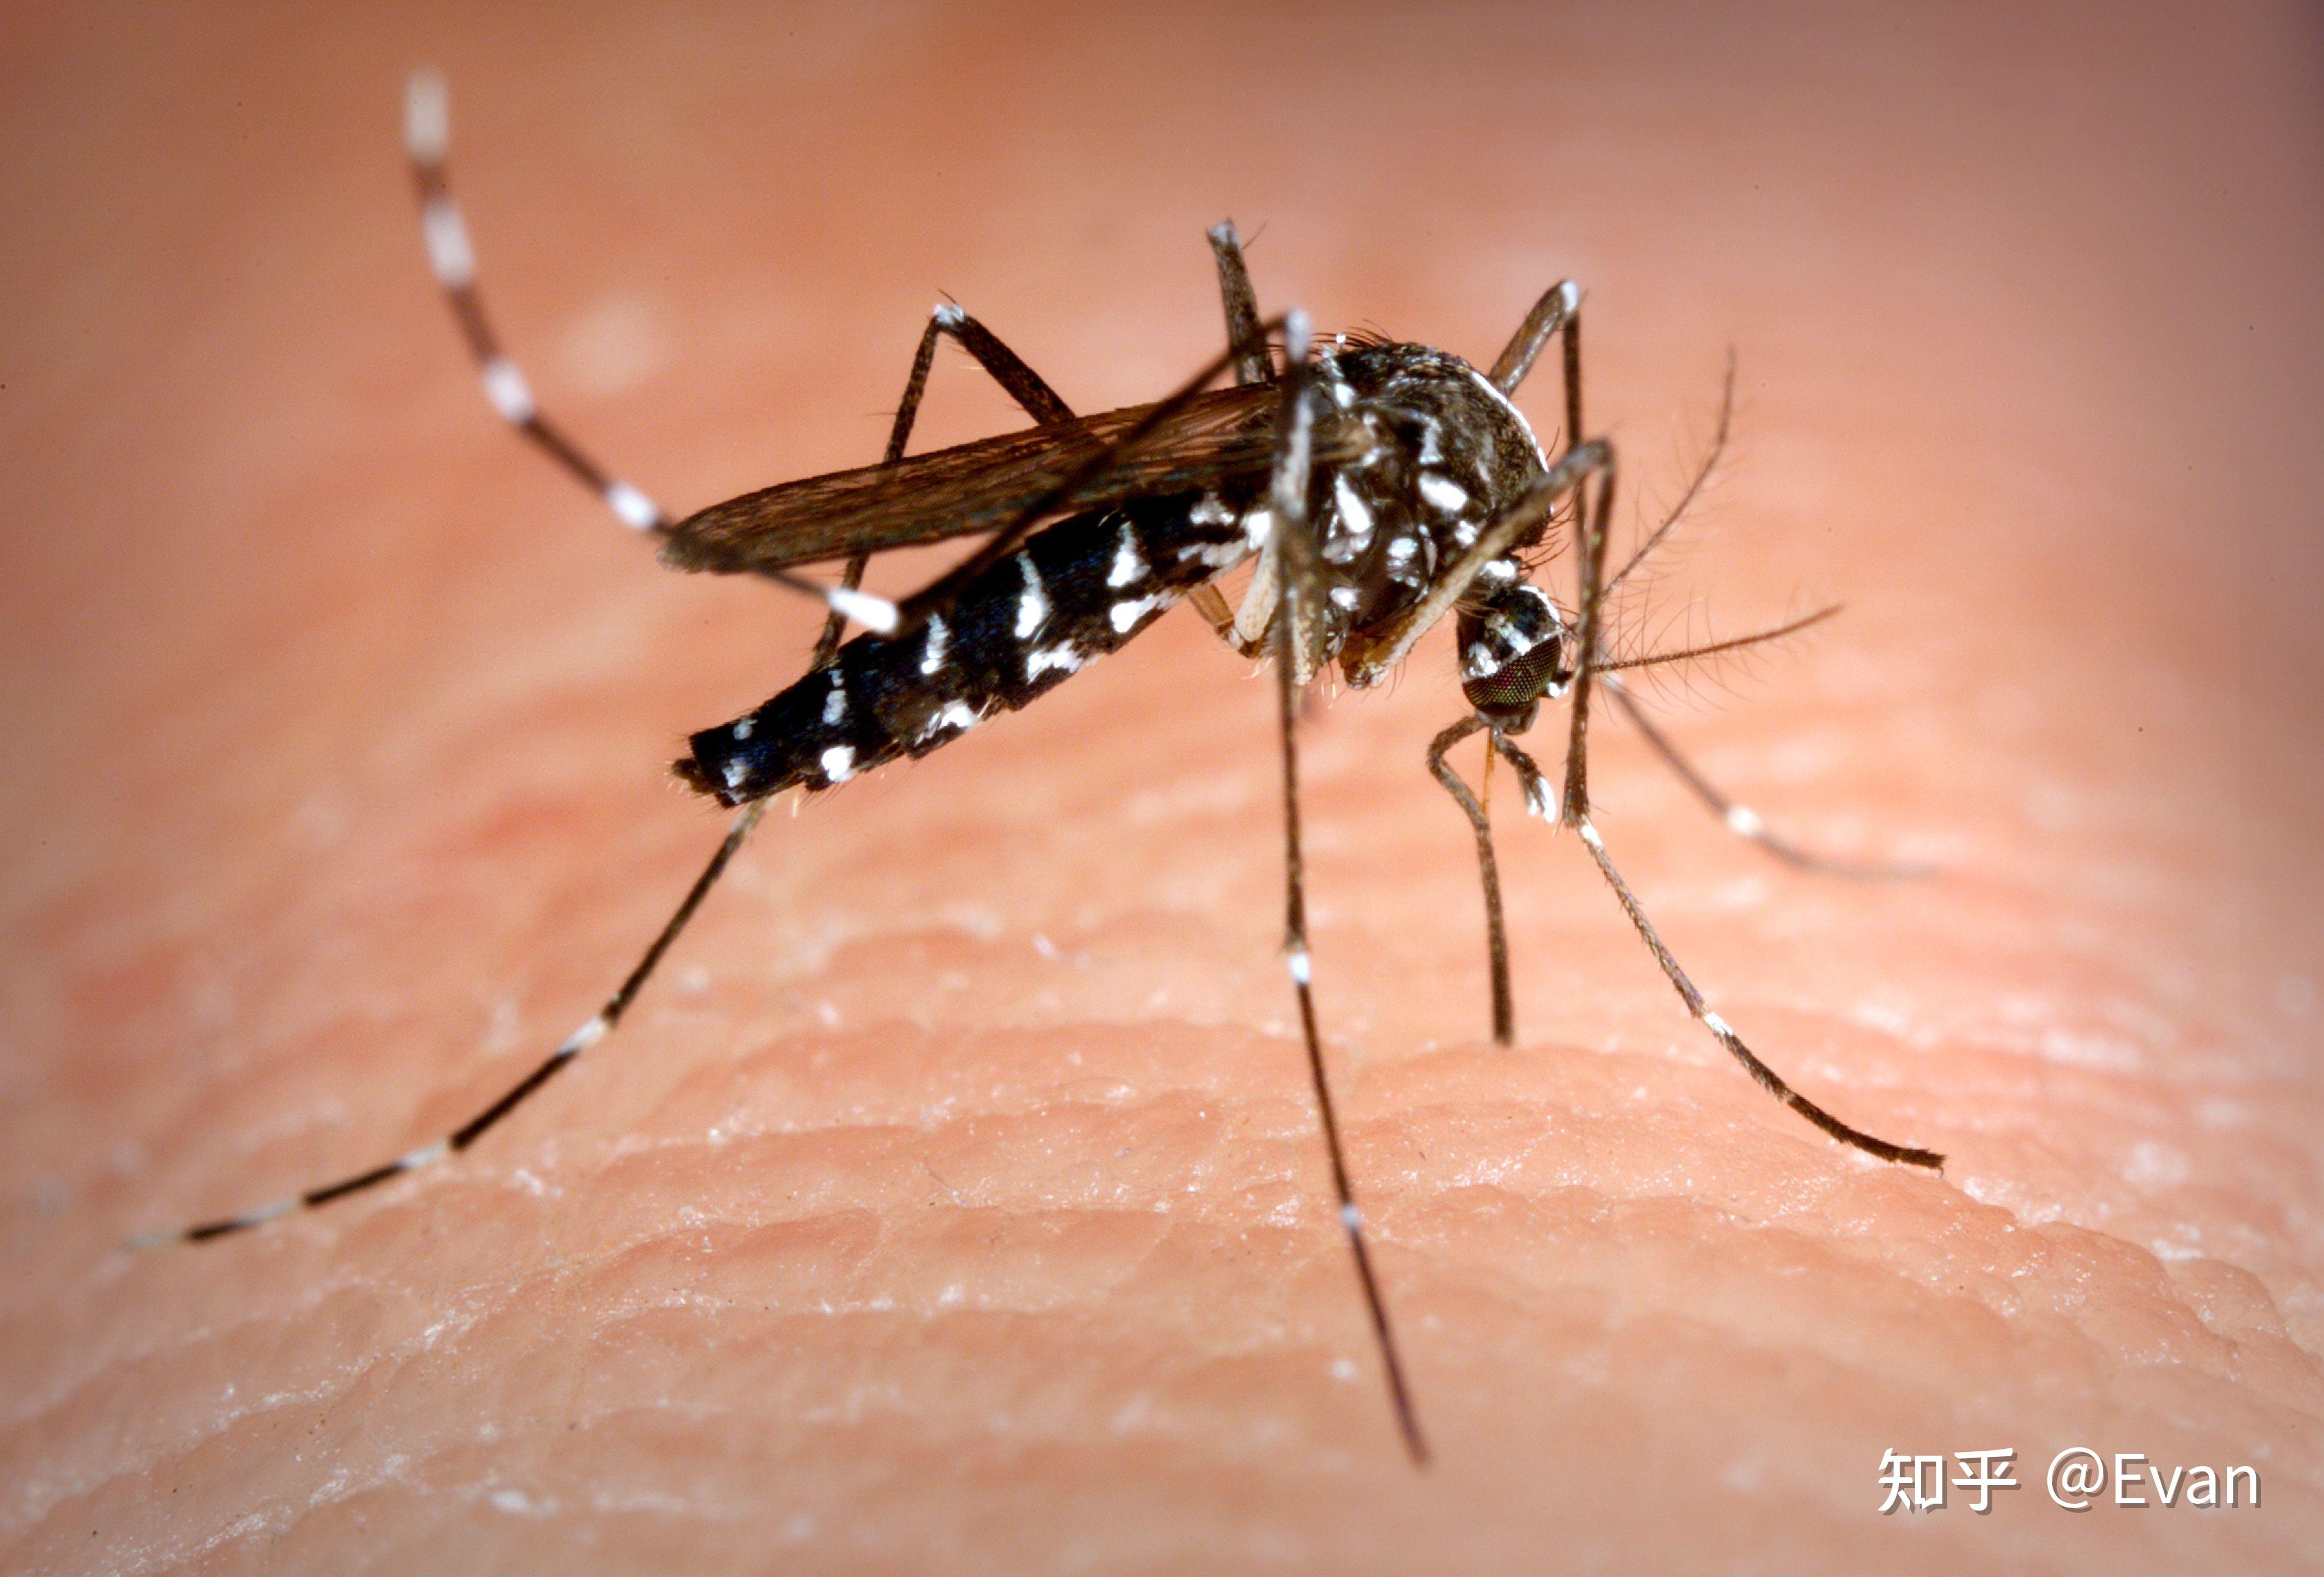 超过 70 张关于“蚊子咬”和“蚊子”的免费图片 - Pixabay